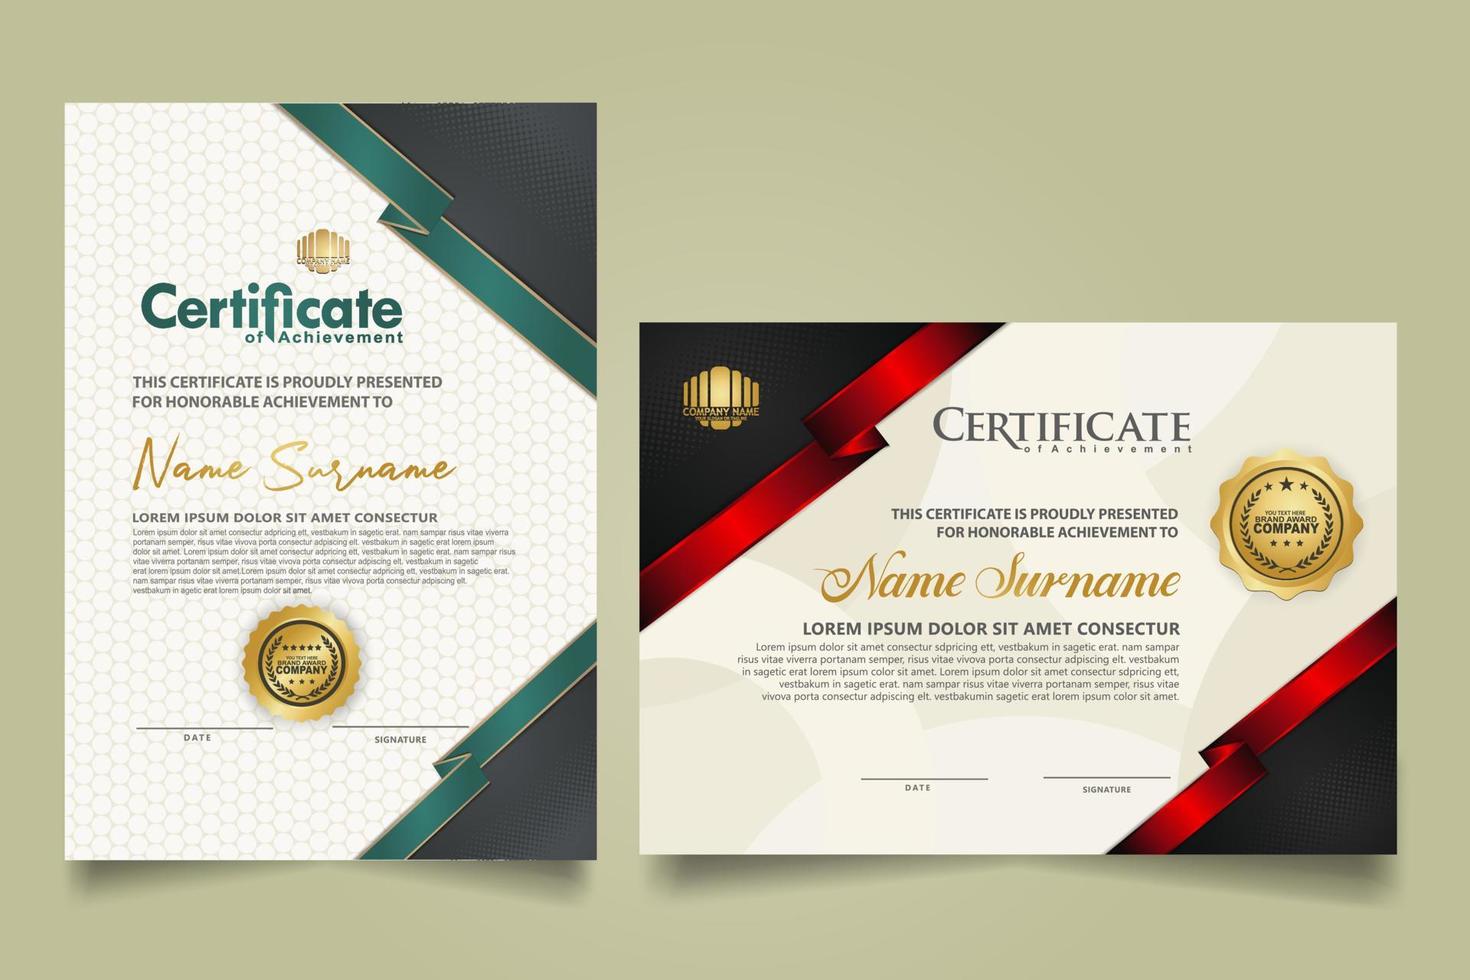 reeks certificaat sjabloon met lint strepen ornament en modern structuur patroon achtergrond. diploma. vector illustratie